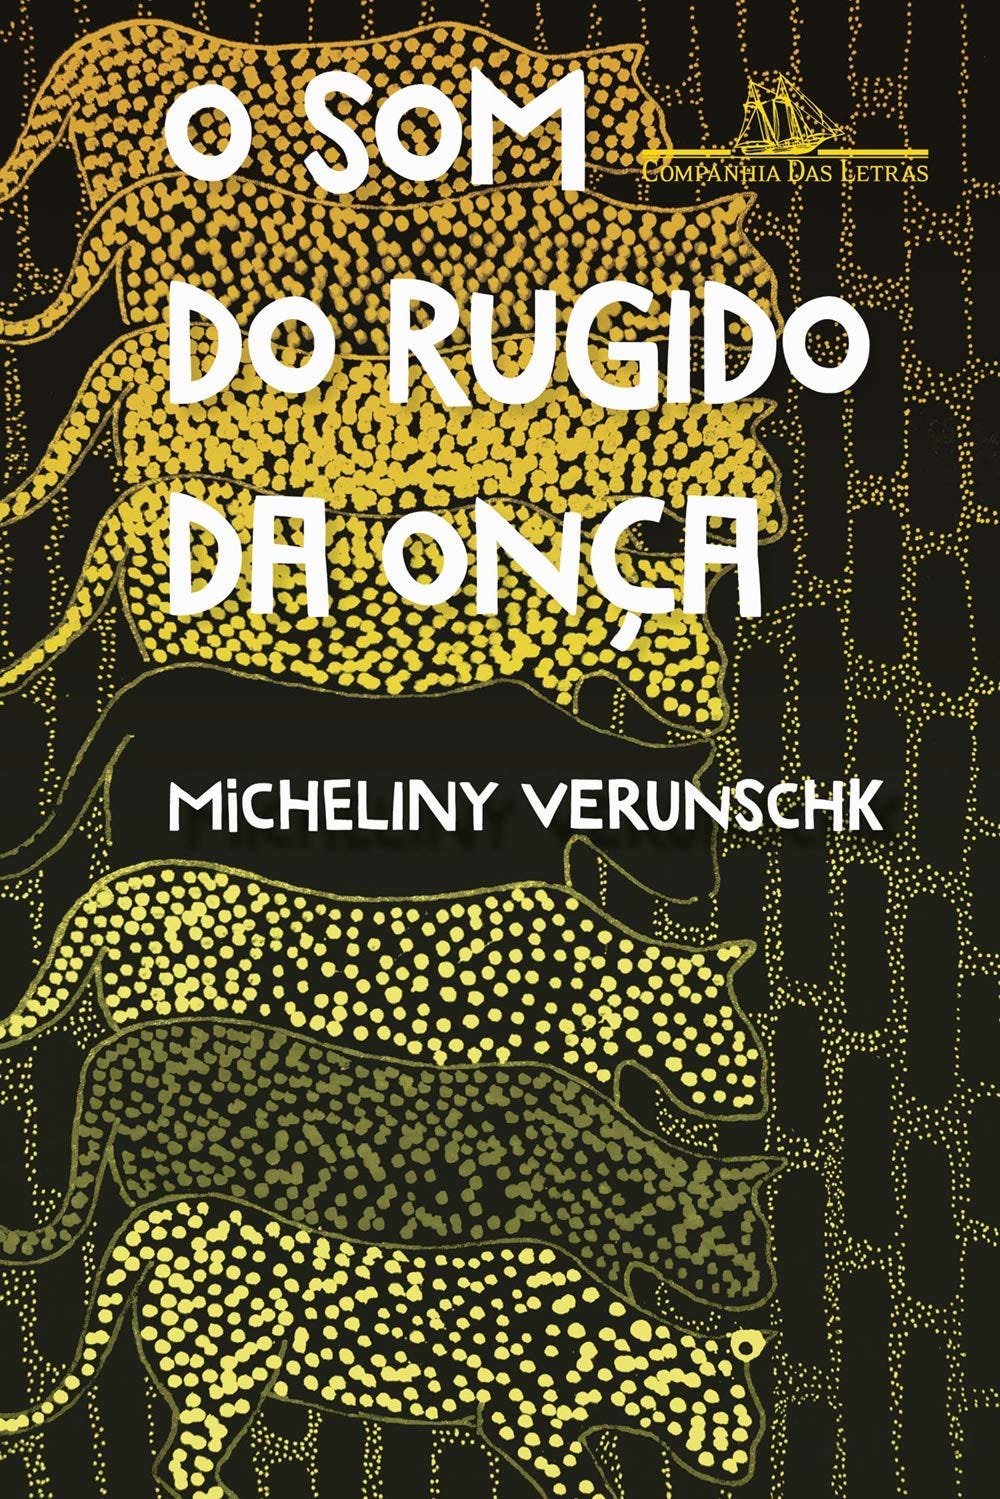 Capa do livro "o som do rugido da onça". Mostra a ilustração de uma onça repetidas vezes do topo à base, mais o nome do livro e da autora: micheliny verunschk.